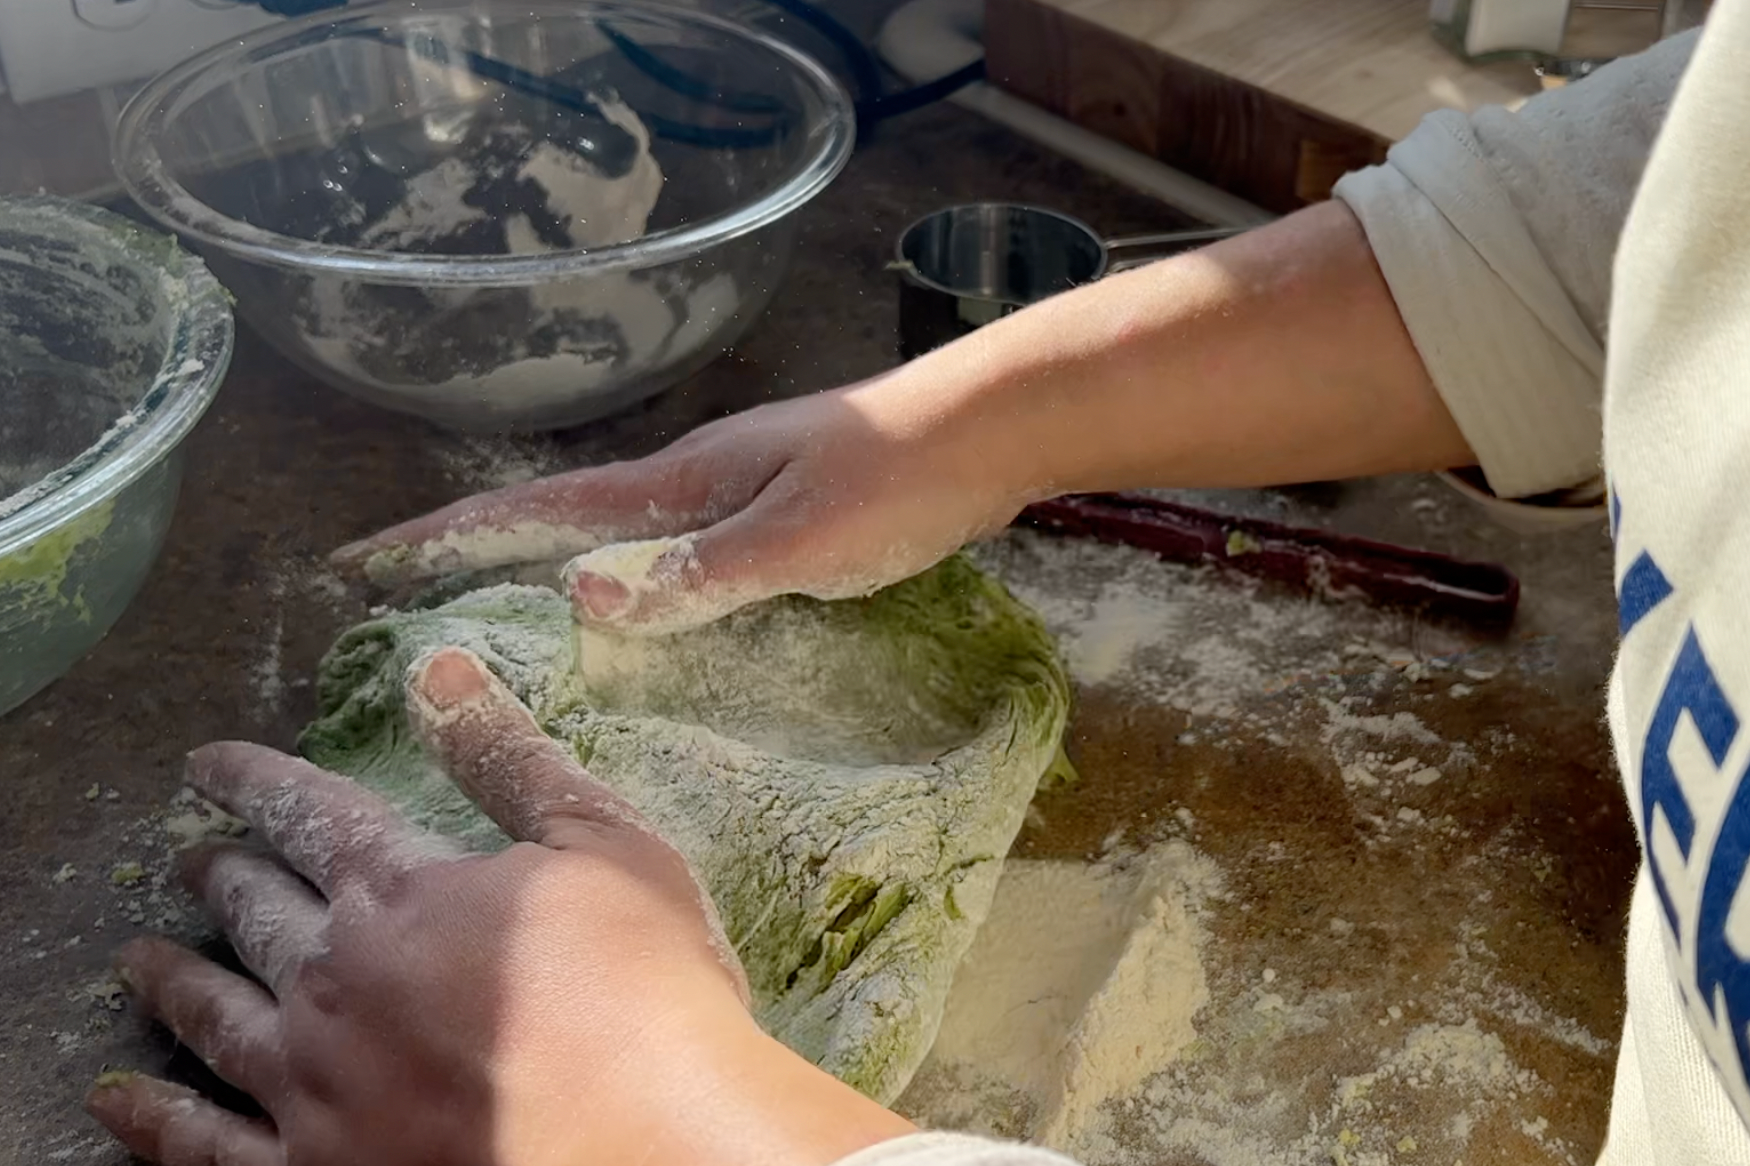 Kneading green dough